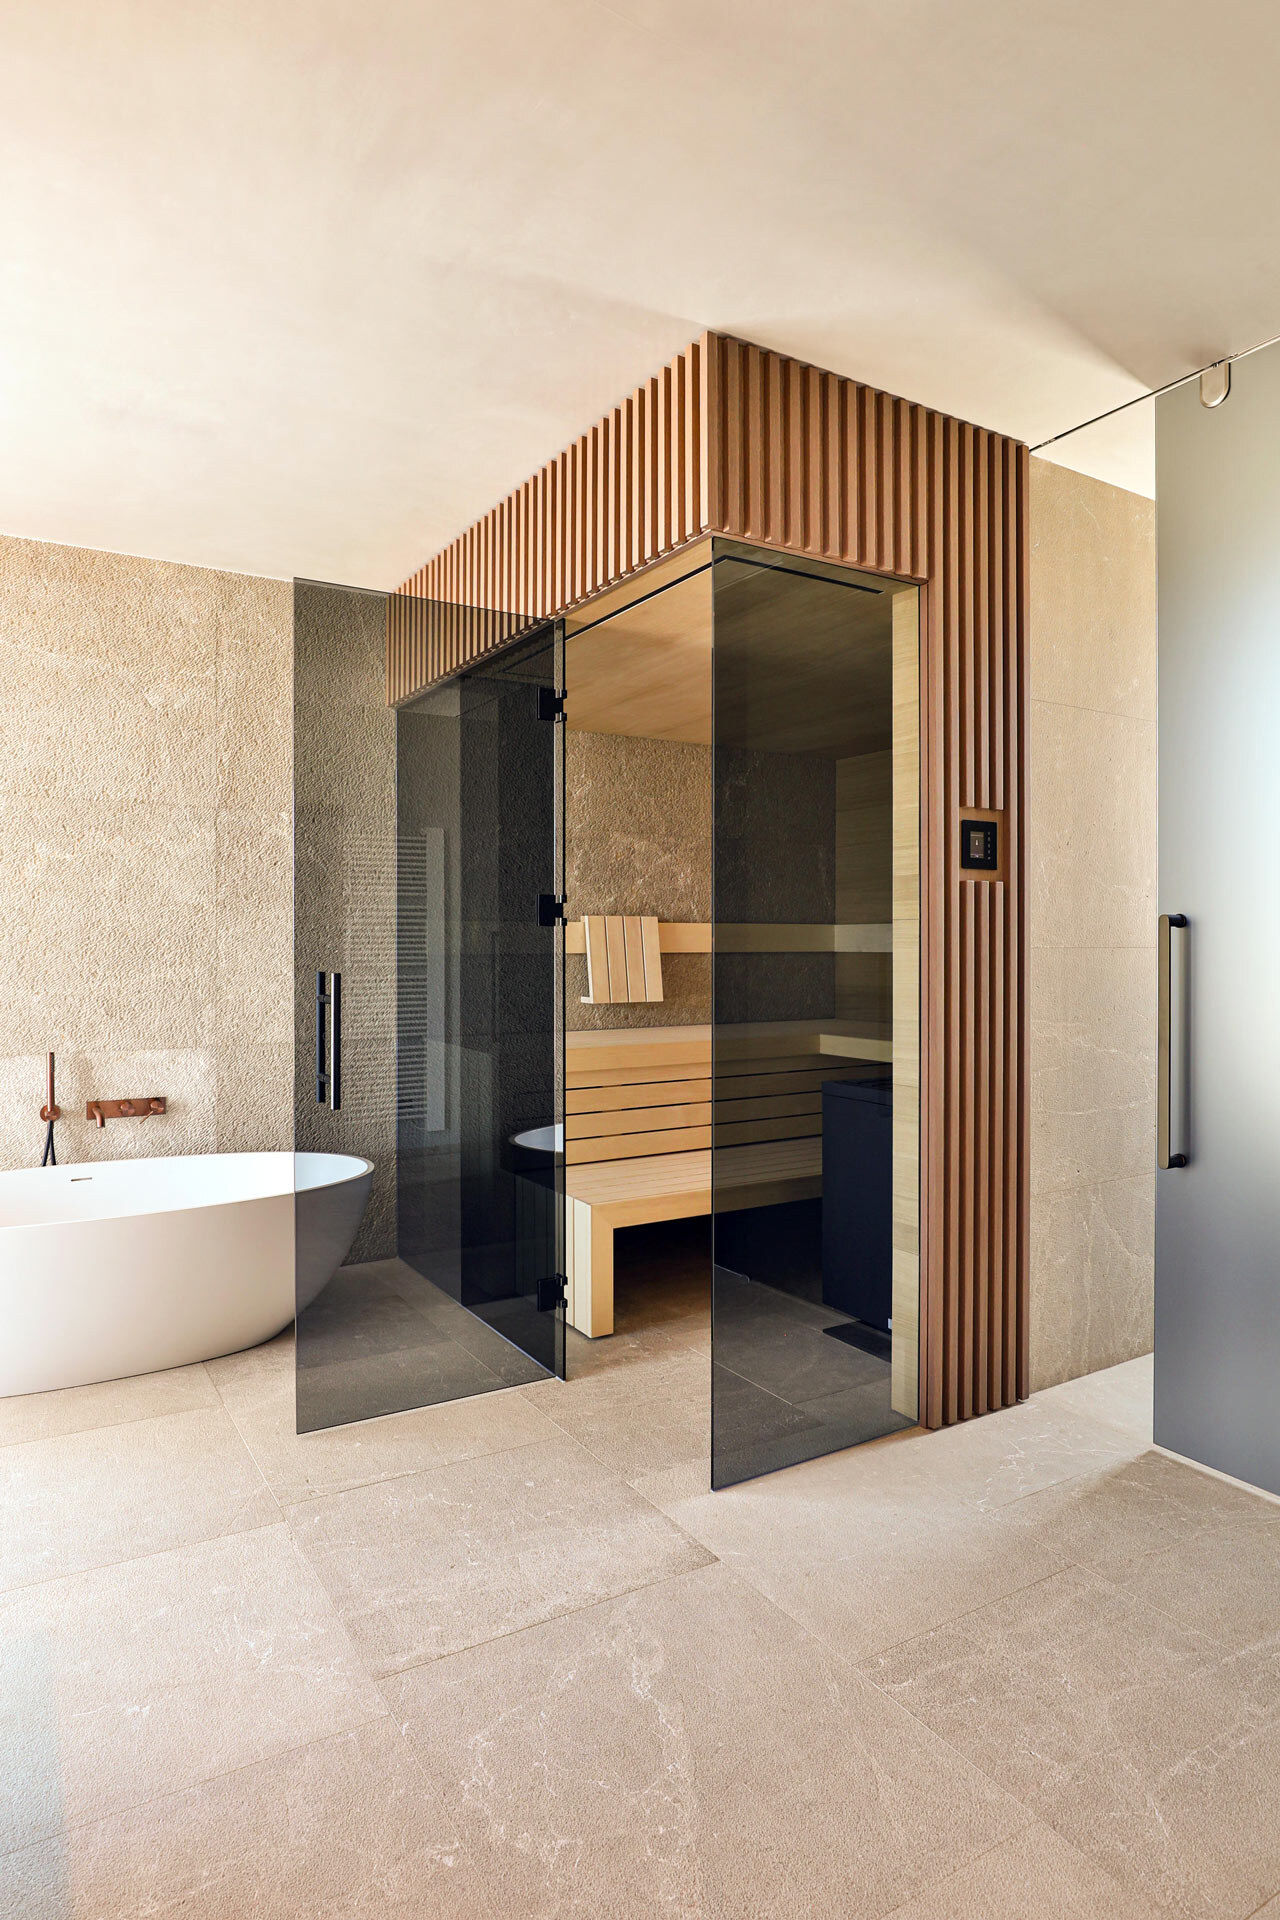 Minimalistische Sauna mit schwarz getönter Frontverglasung, verkleidet in getönten Holzleisten, innen ausgeführt in gemaserten, astfreien Eichenholzpaneelen in einem Badezimmer mit freistehender Badewanne im Japandi Stil.